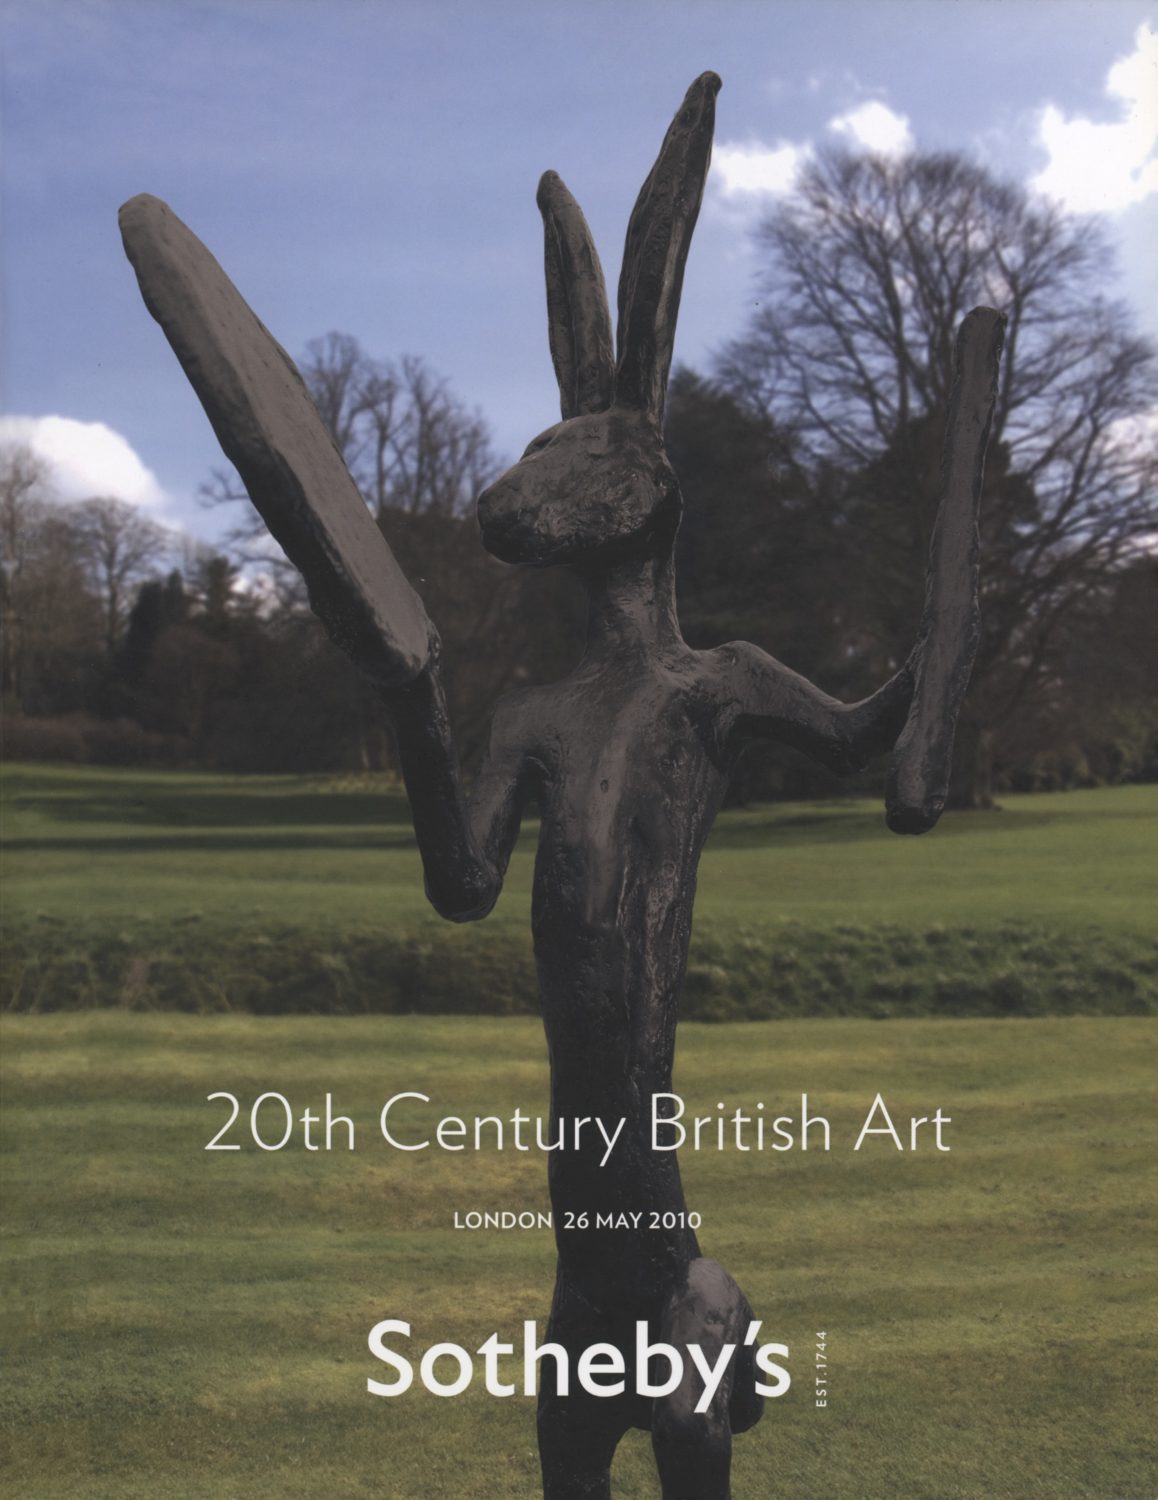 20th Century British Art, London 26 may 2010